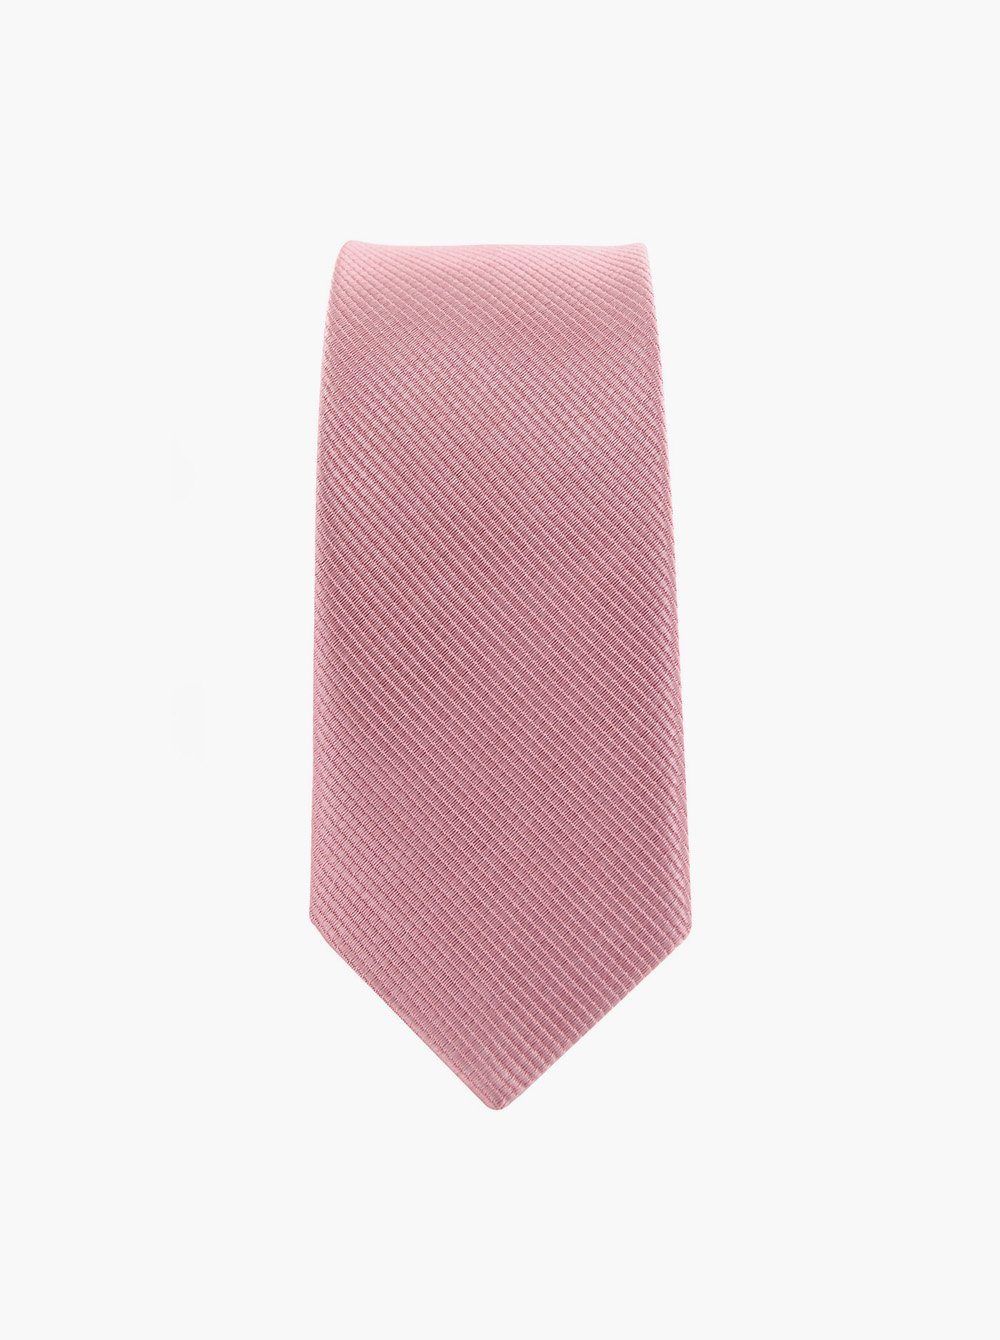 axy Krawatte Altrosa Geschenkbox Seidenkrawatte, Geschenk mit 5.0 cm Krawatte Herren perfektes breit einfarbig